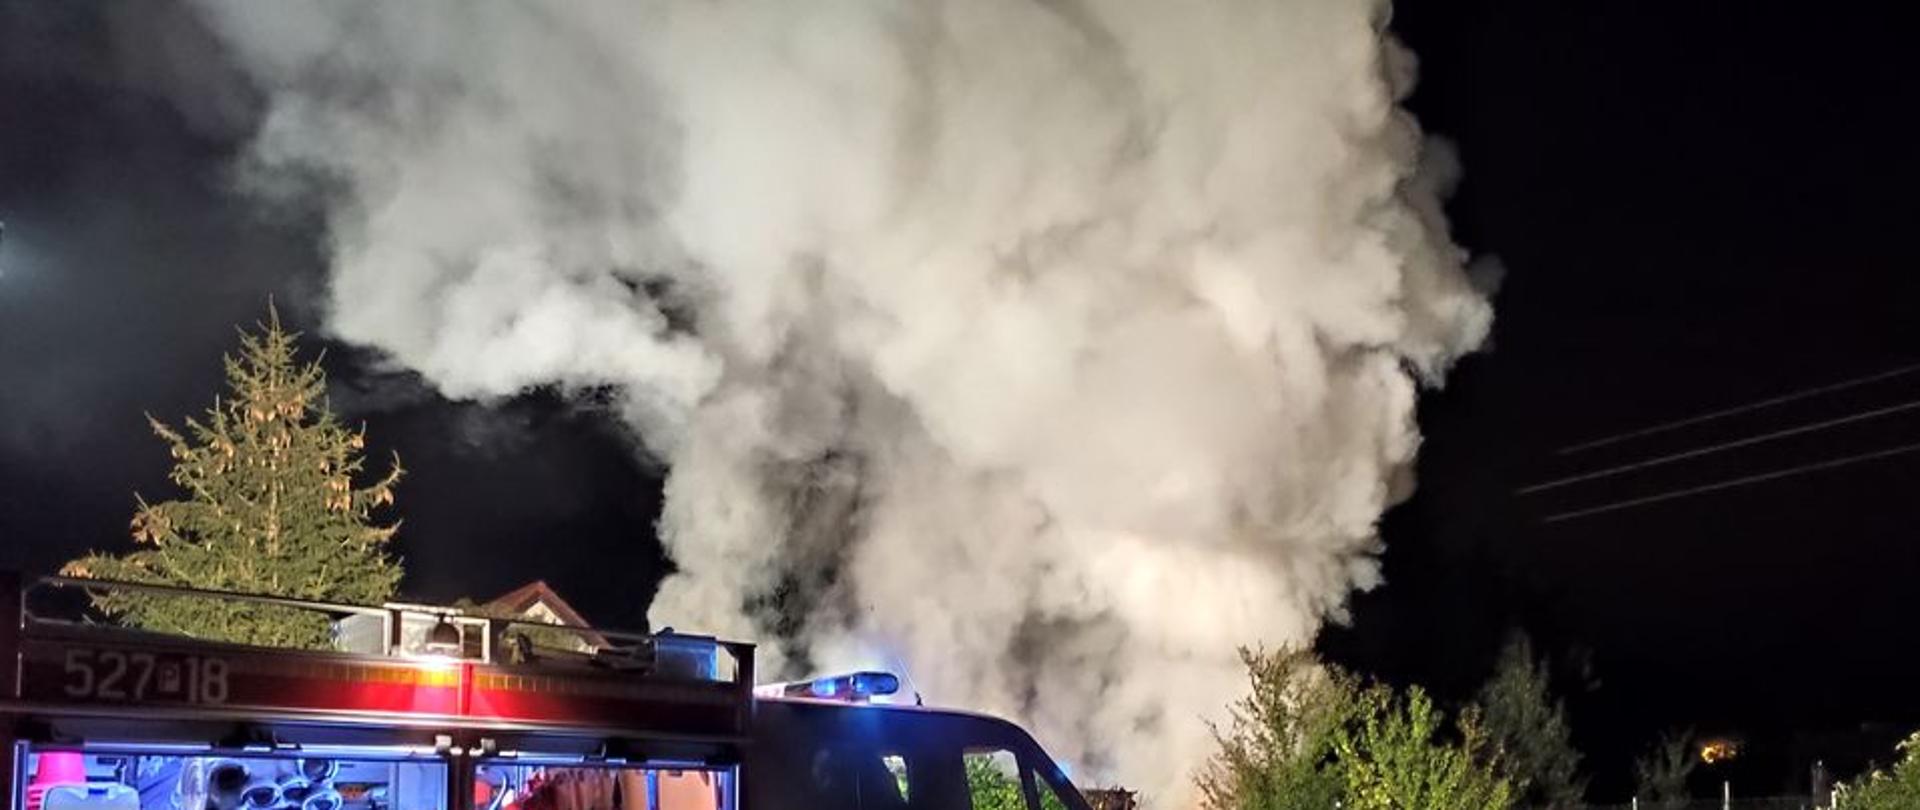 pojazd pożarniczy z otwartymi galotami oświetla teren akcji w tle unoszące się kłęby dymu i pary